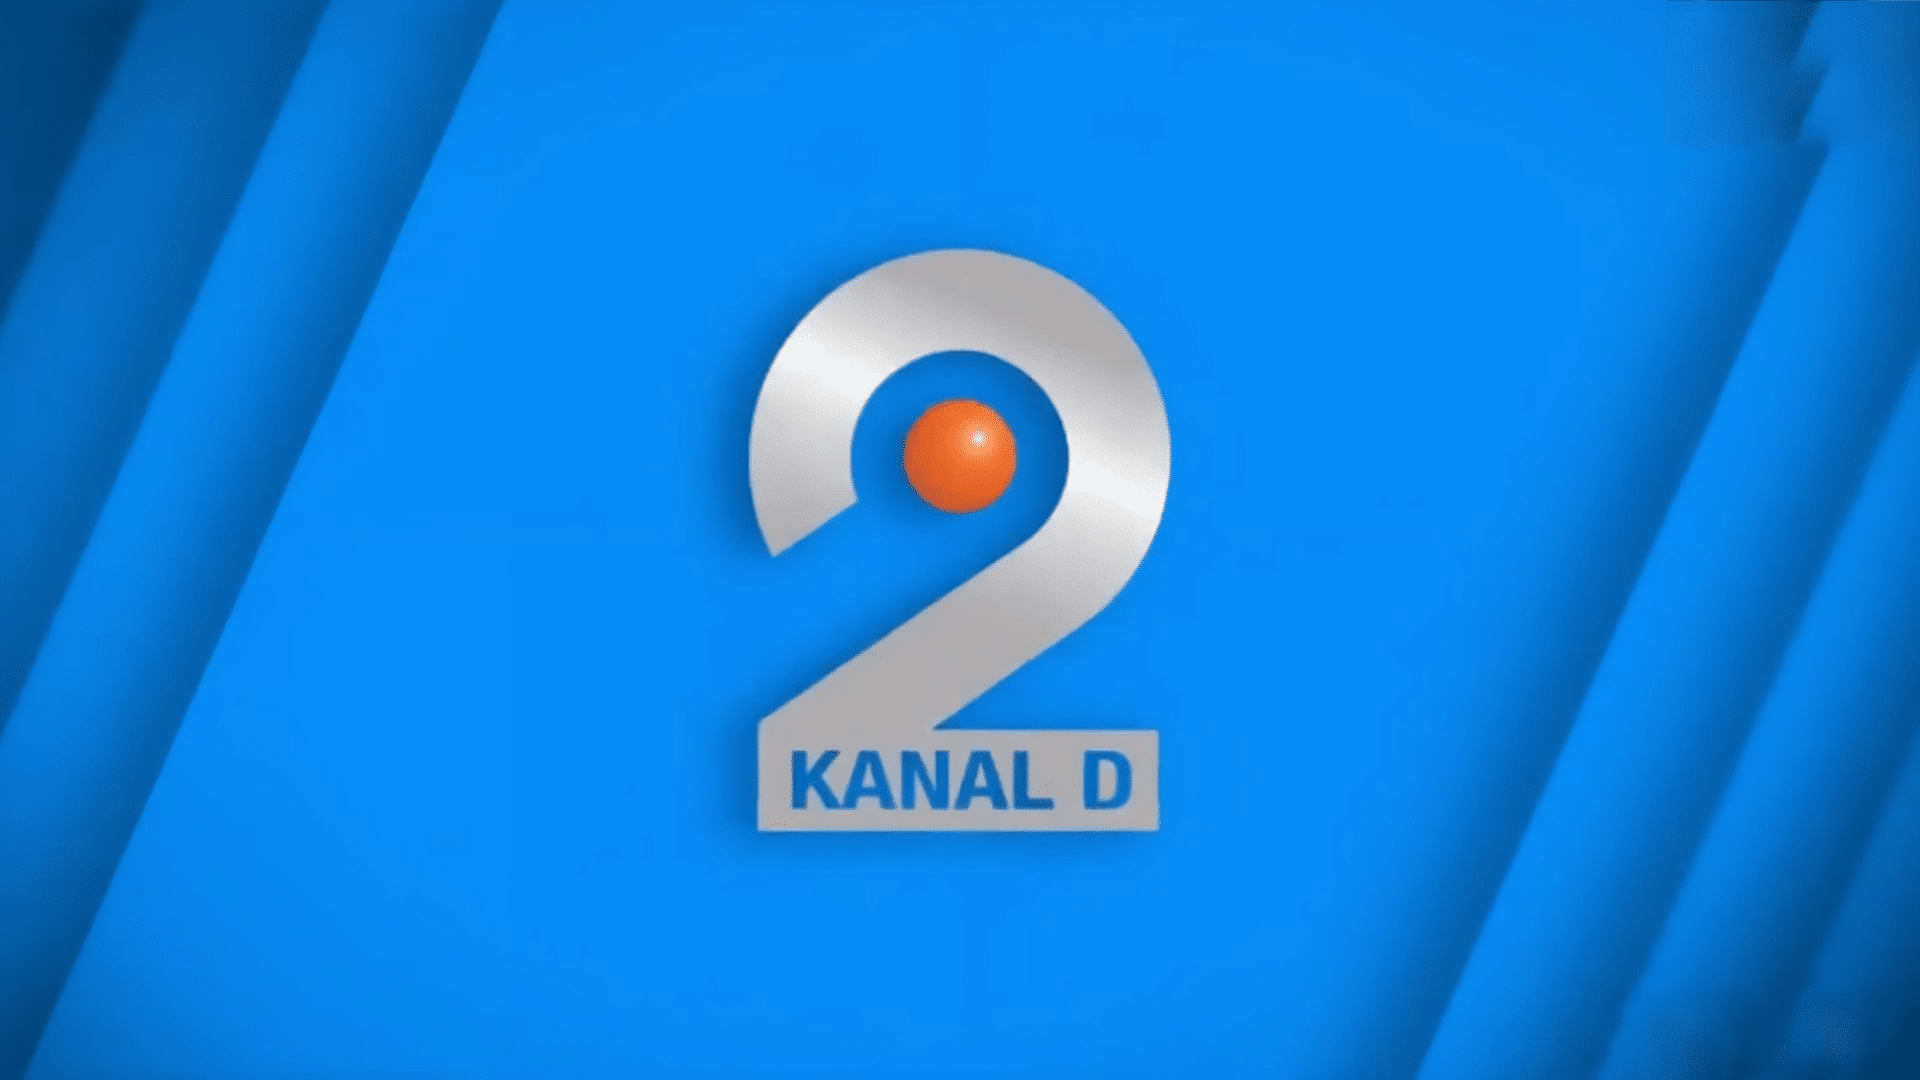 KANAL D 2